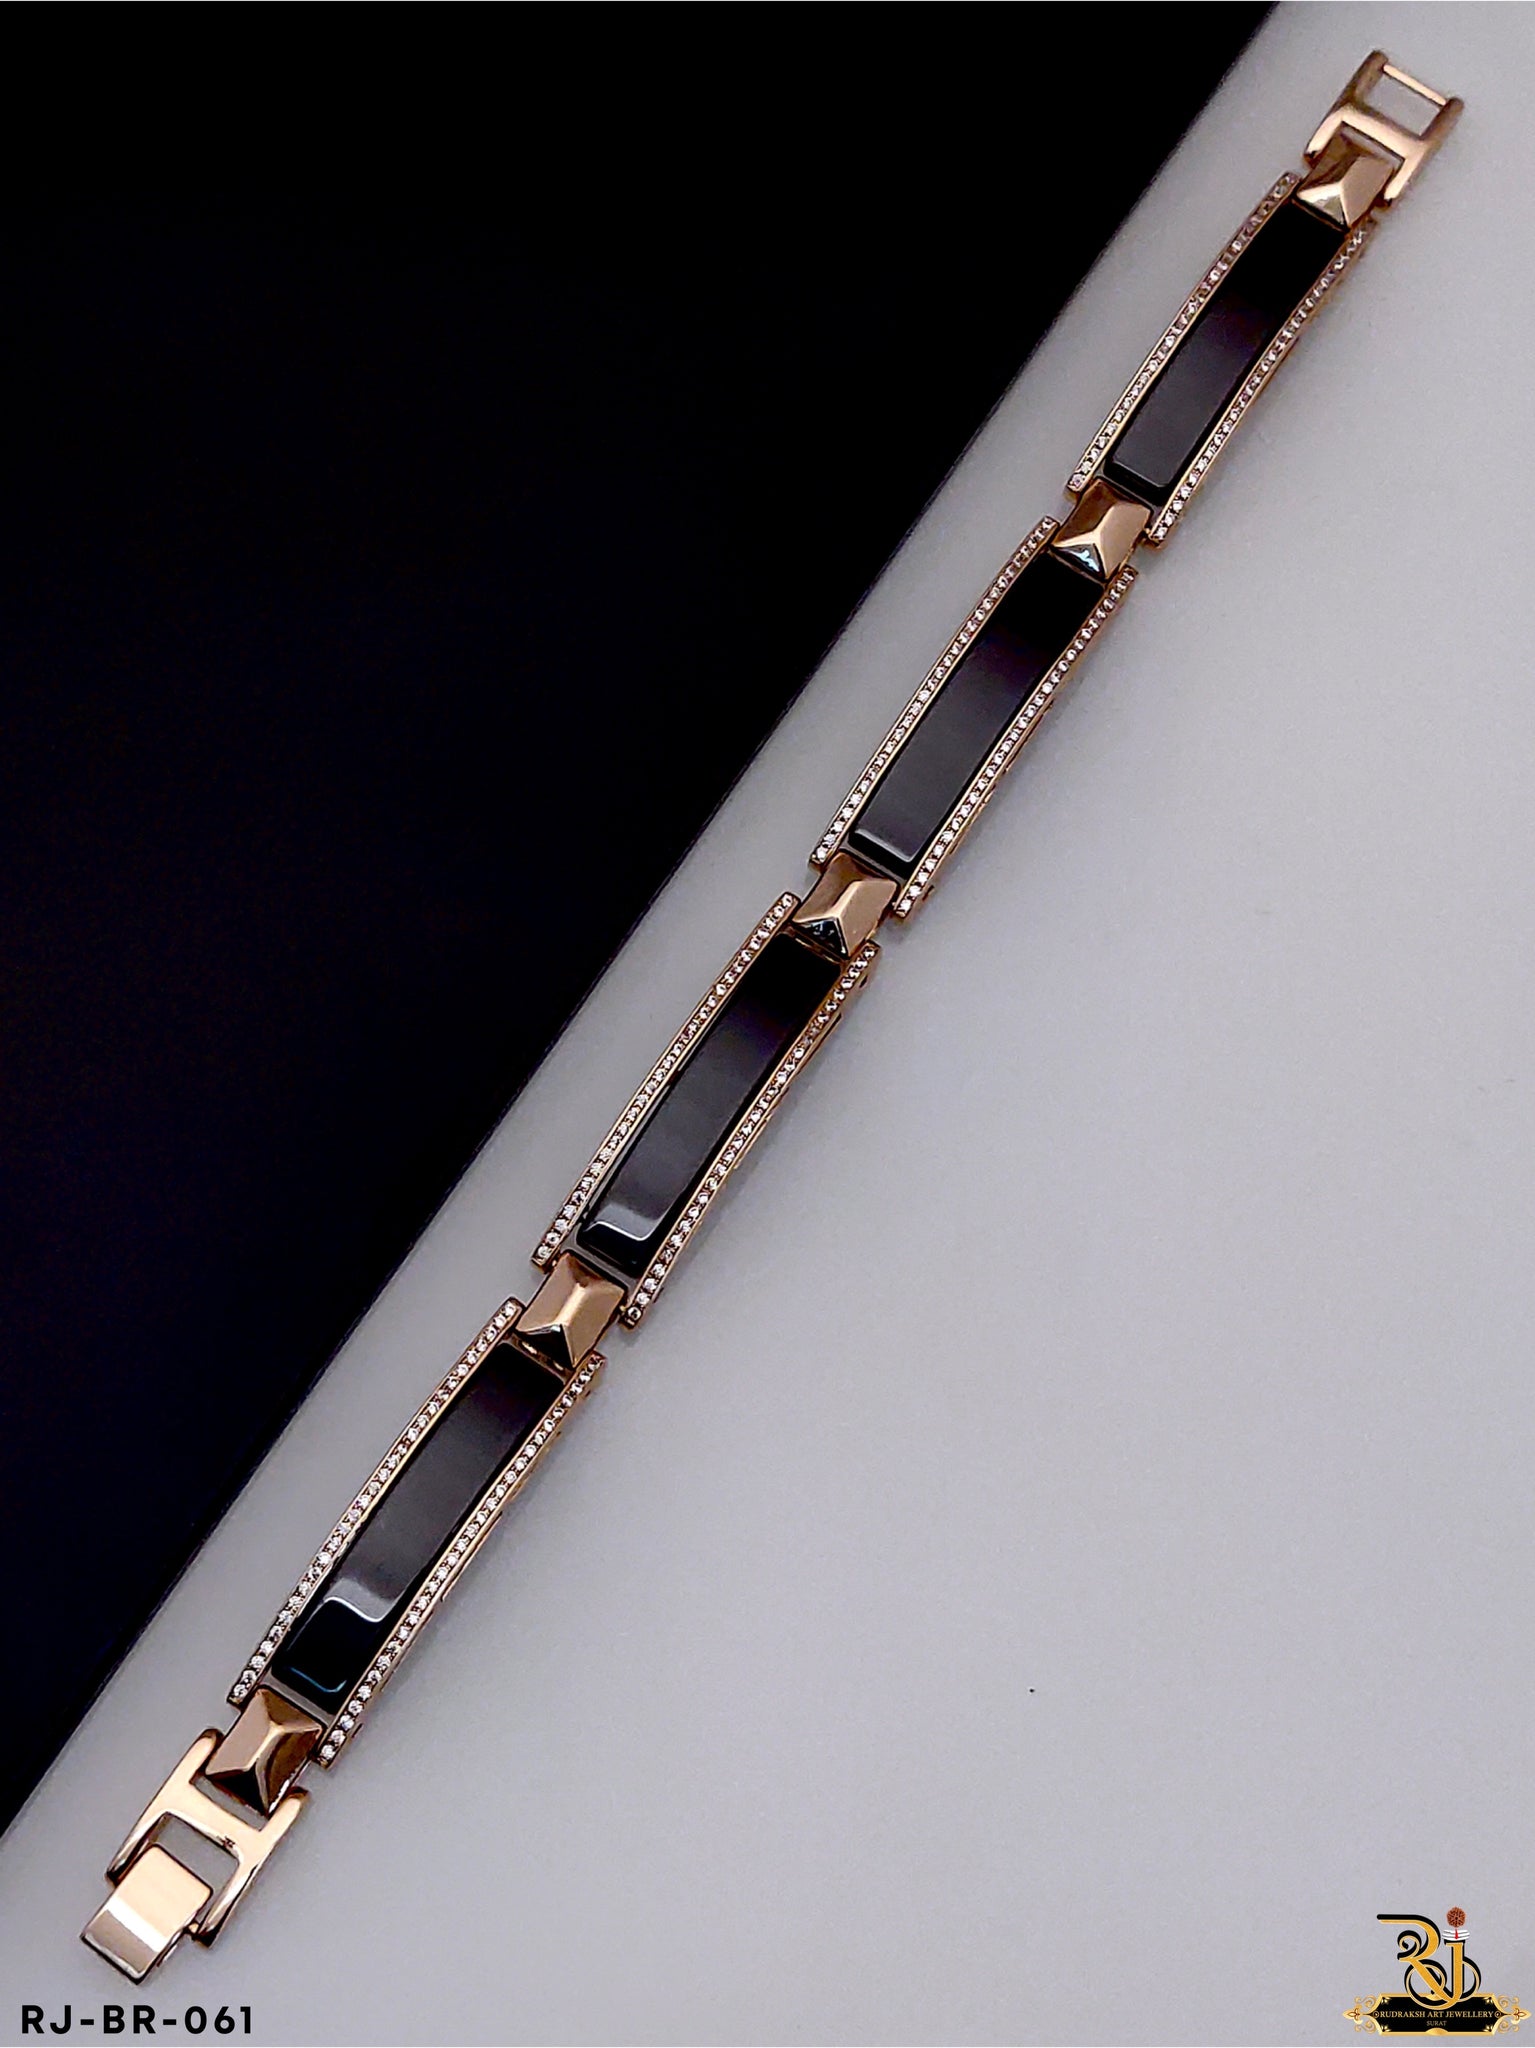 Ceramic Upcycled Rope Bracelet — Sustainable Bracelets | MVMT